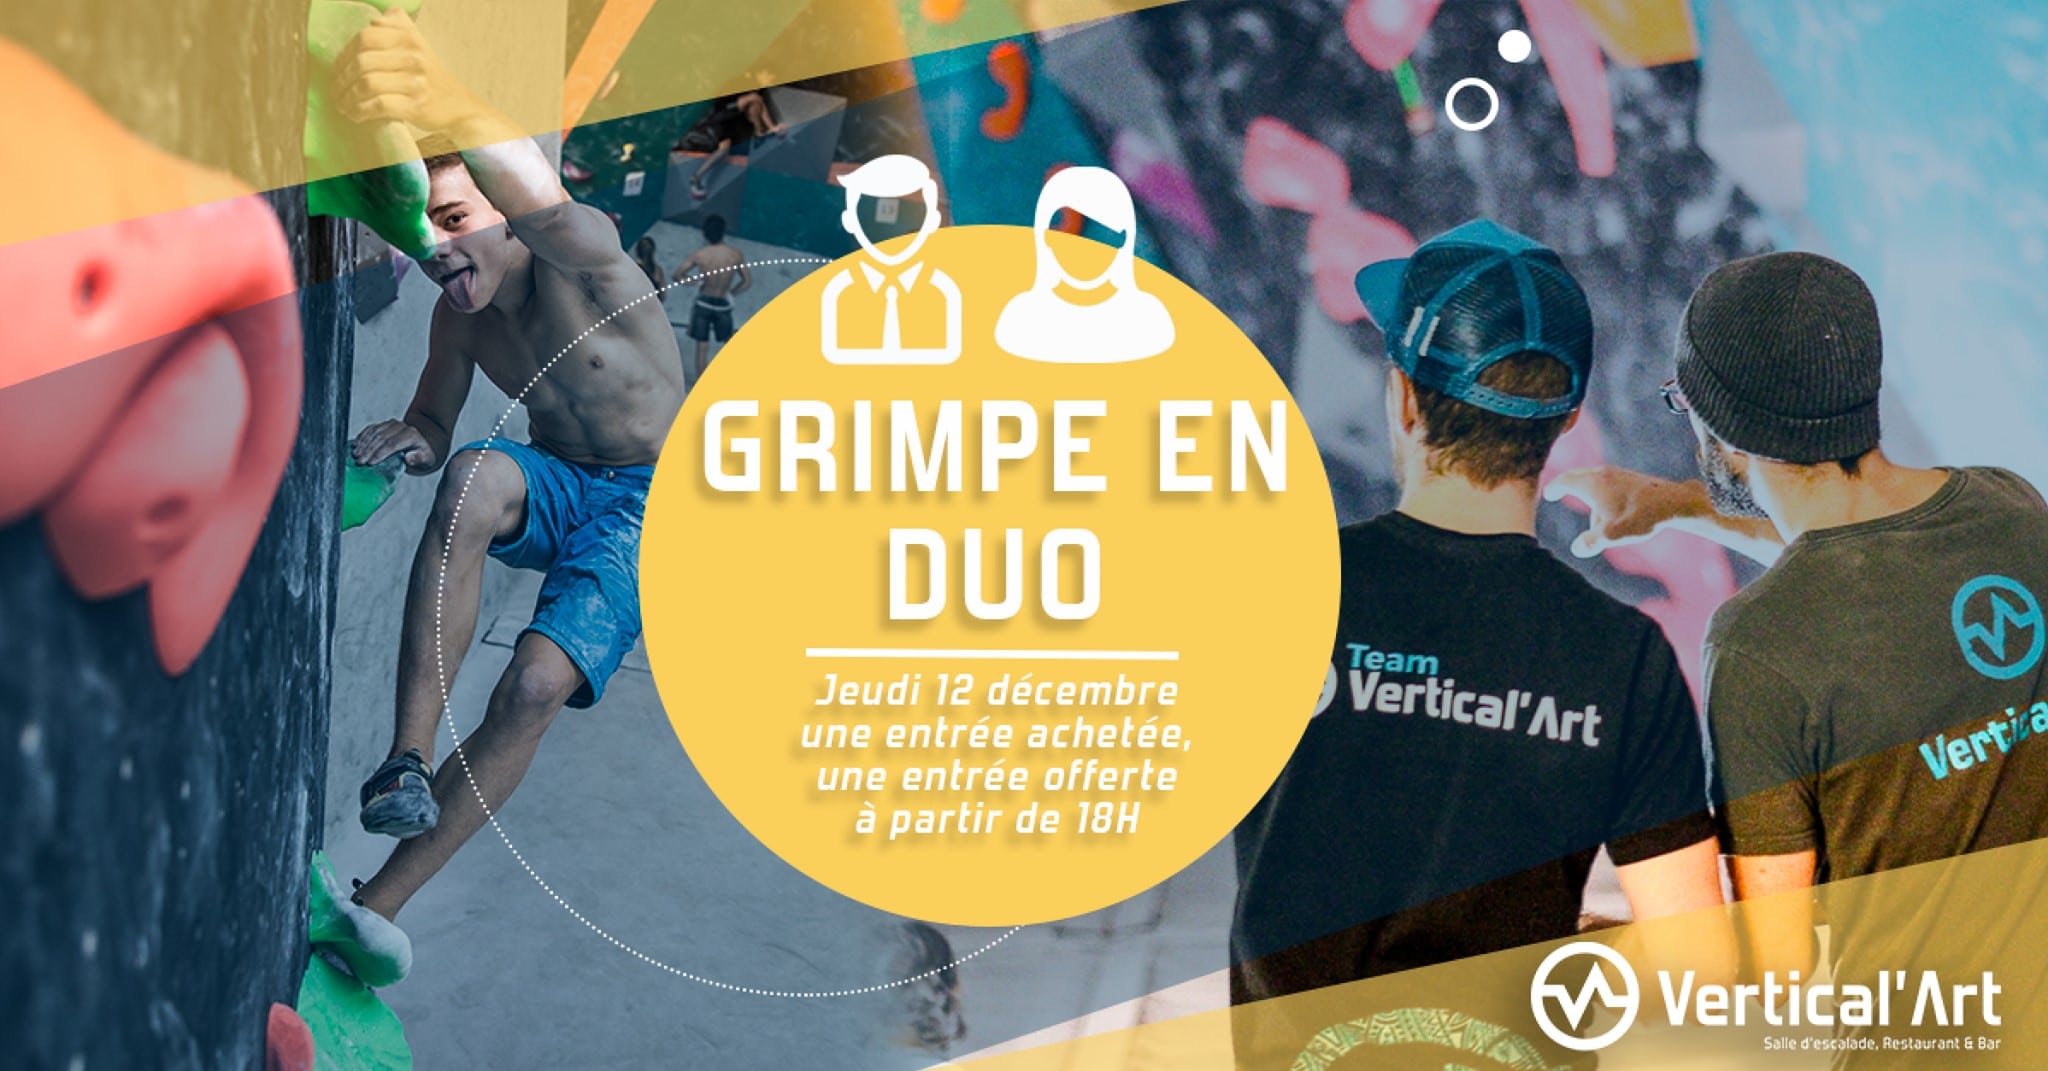 grimpe en duo Lyon - Vertical’Art lyon - salle d'escalade de bloc - restaurant et bar - soirée entrée gratuite